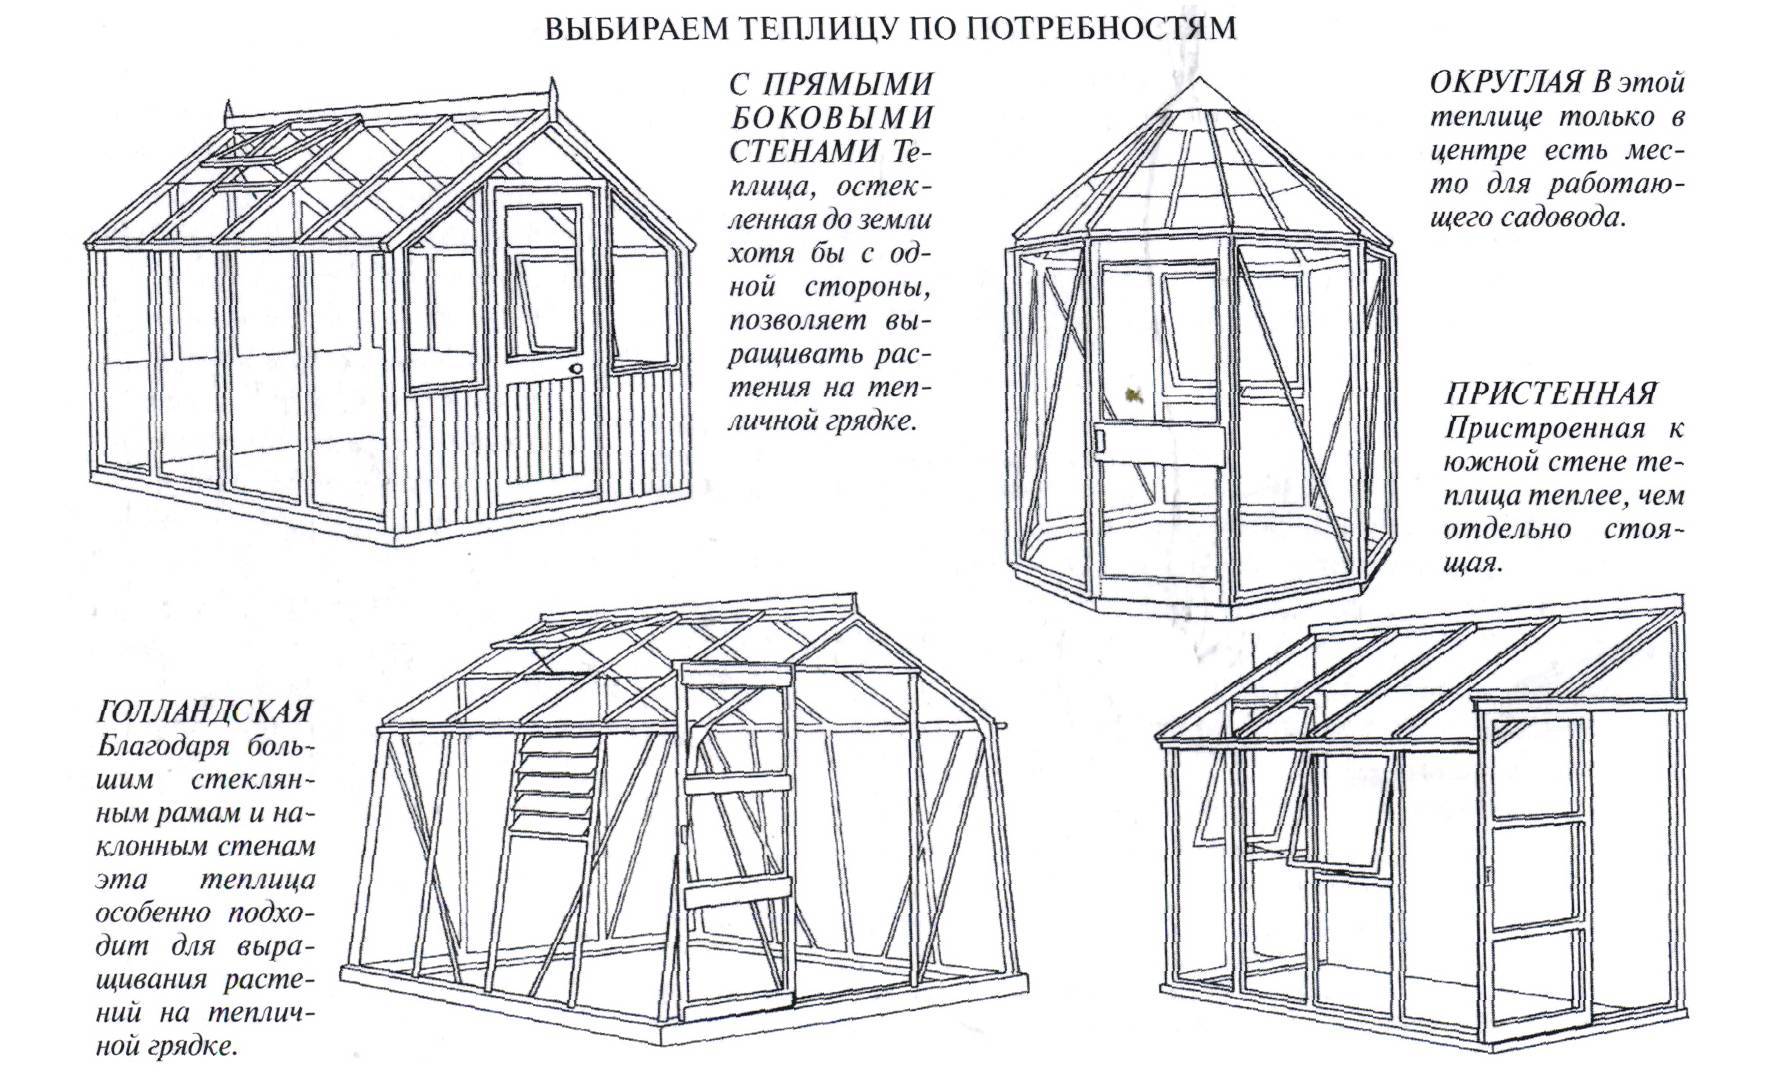 Теплица из дерева своими руками (56 фото): чертежи деревянных конструкций, пошаговая инструкция, как построить теплицу под пленку